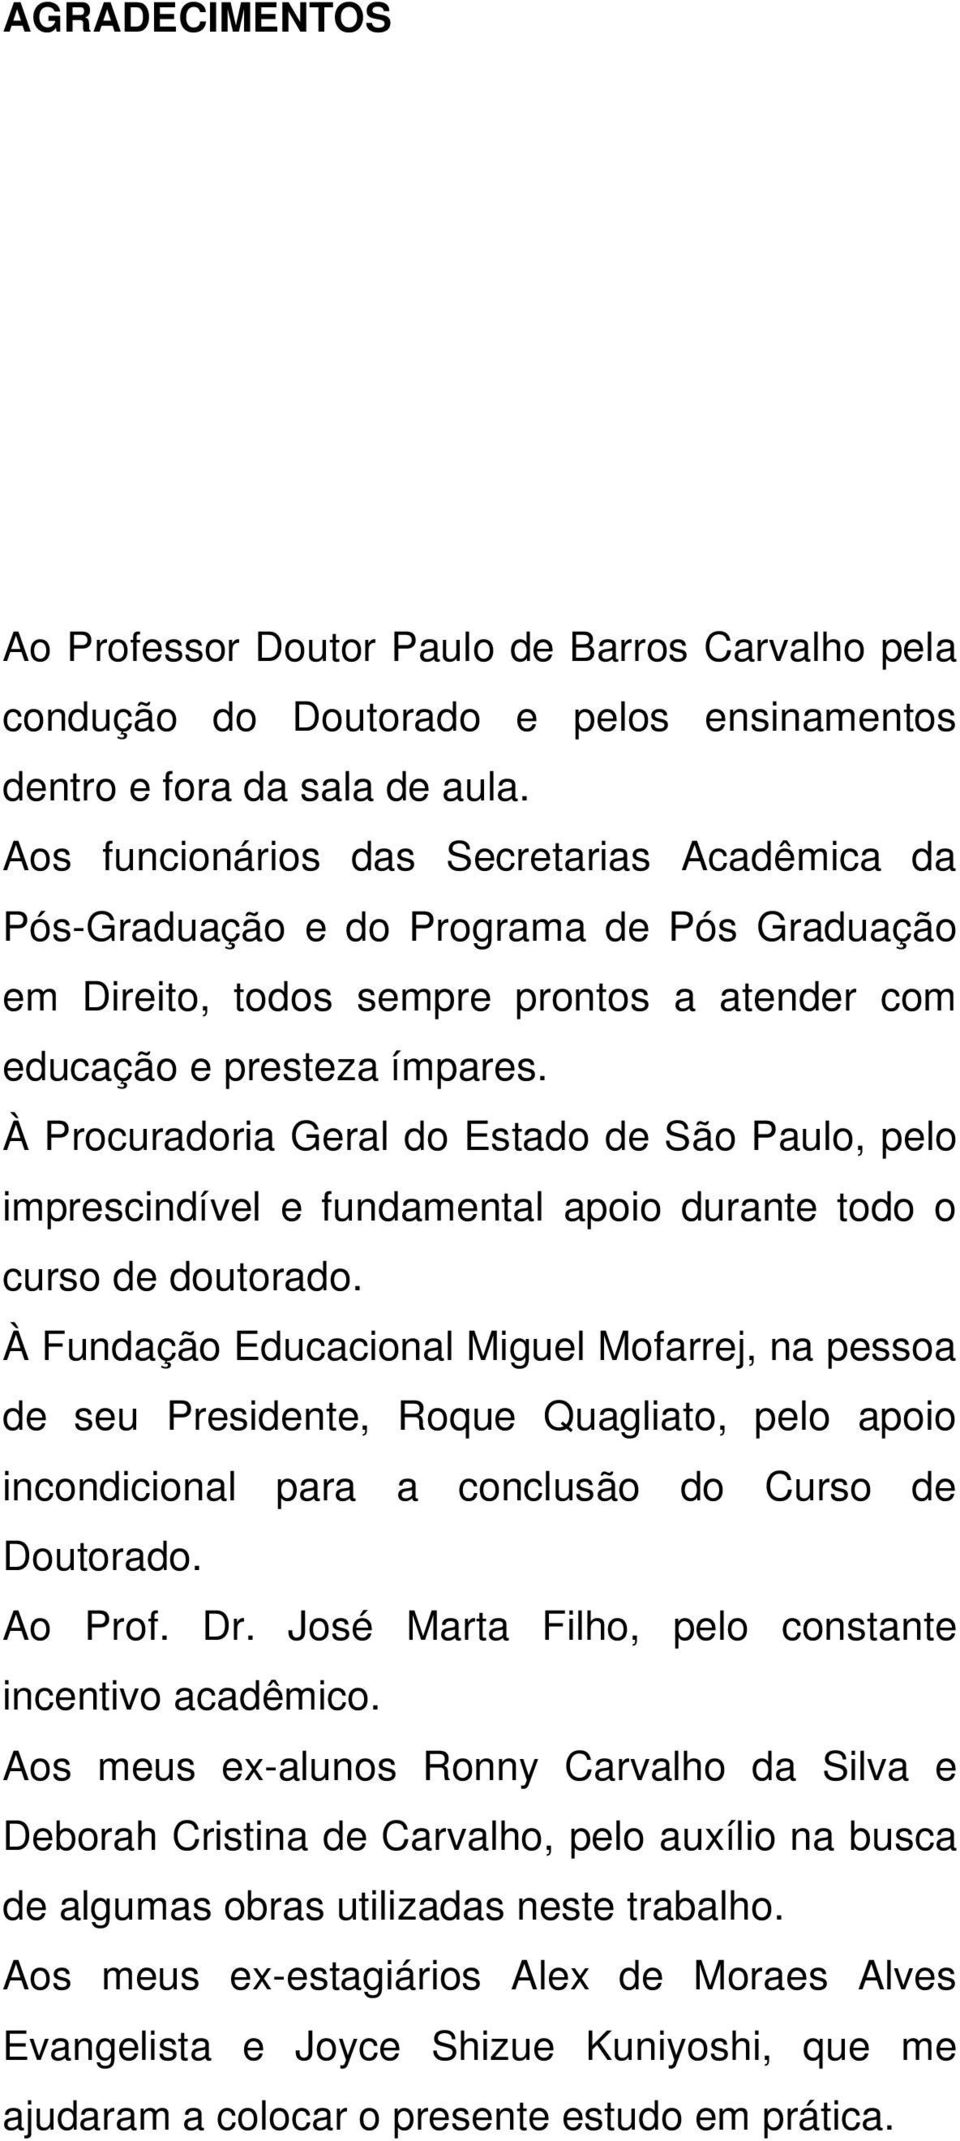 À Procuradoria Geral do Estado de São Paulo, pelo imprescindível e fundamental apoio durante todo o curso de doutorado.